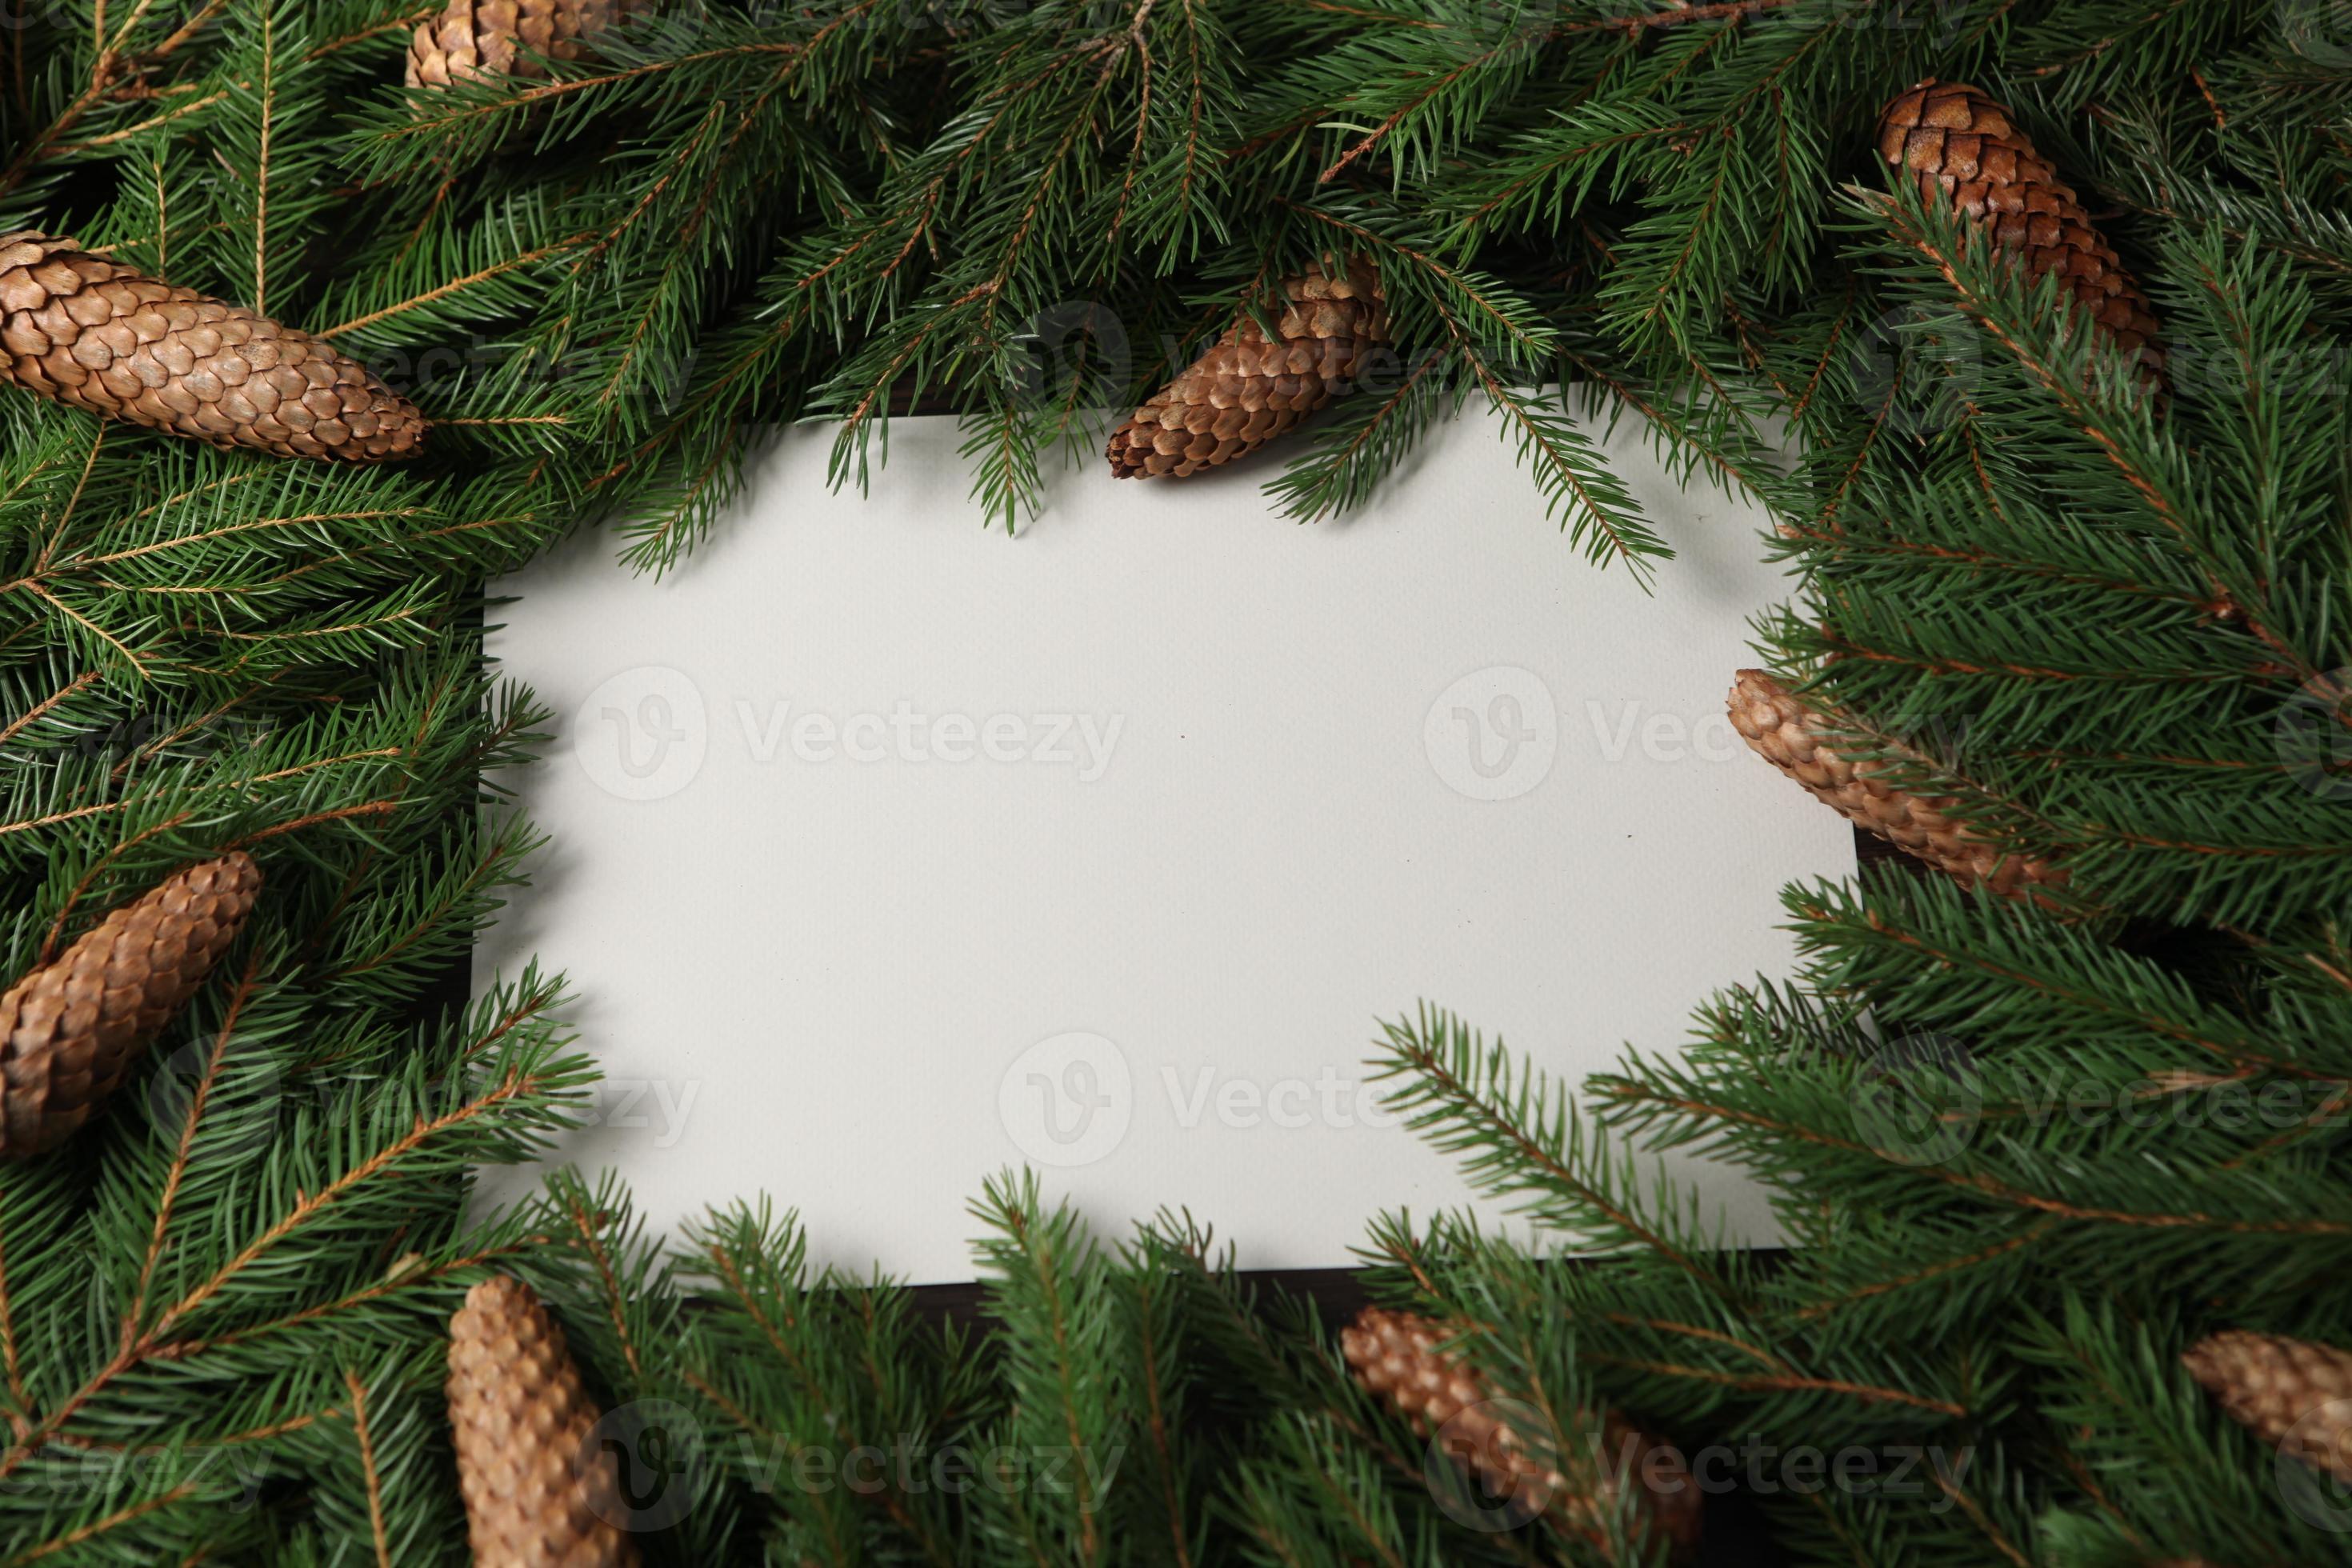 Decoração De Moldura De Natal E Ano Novo - Banner De Cartão De